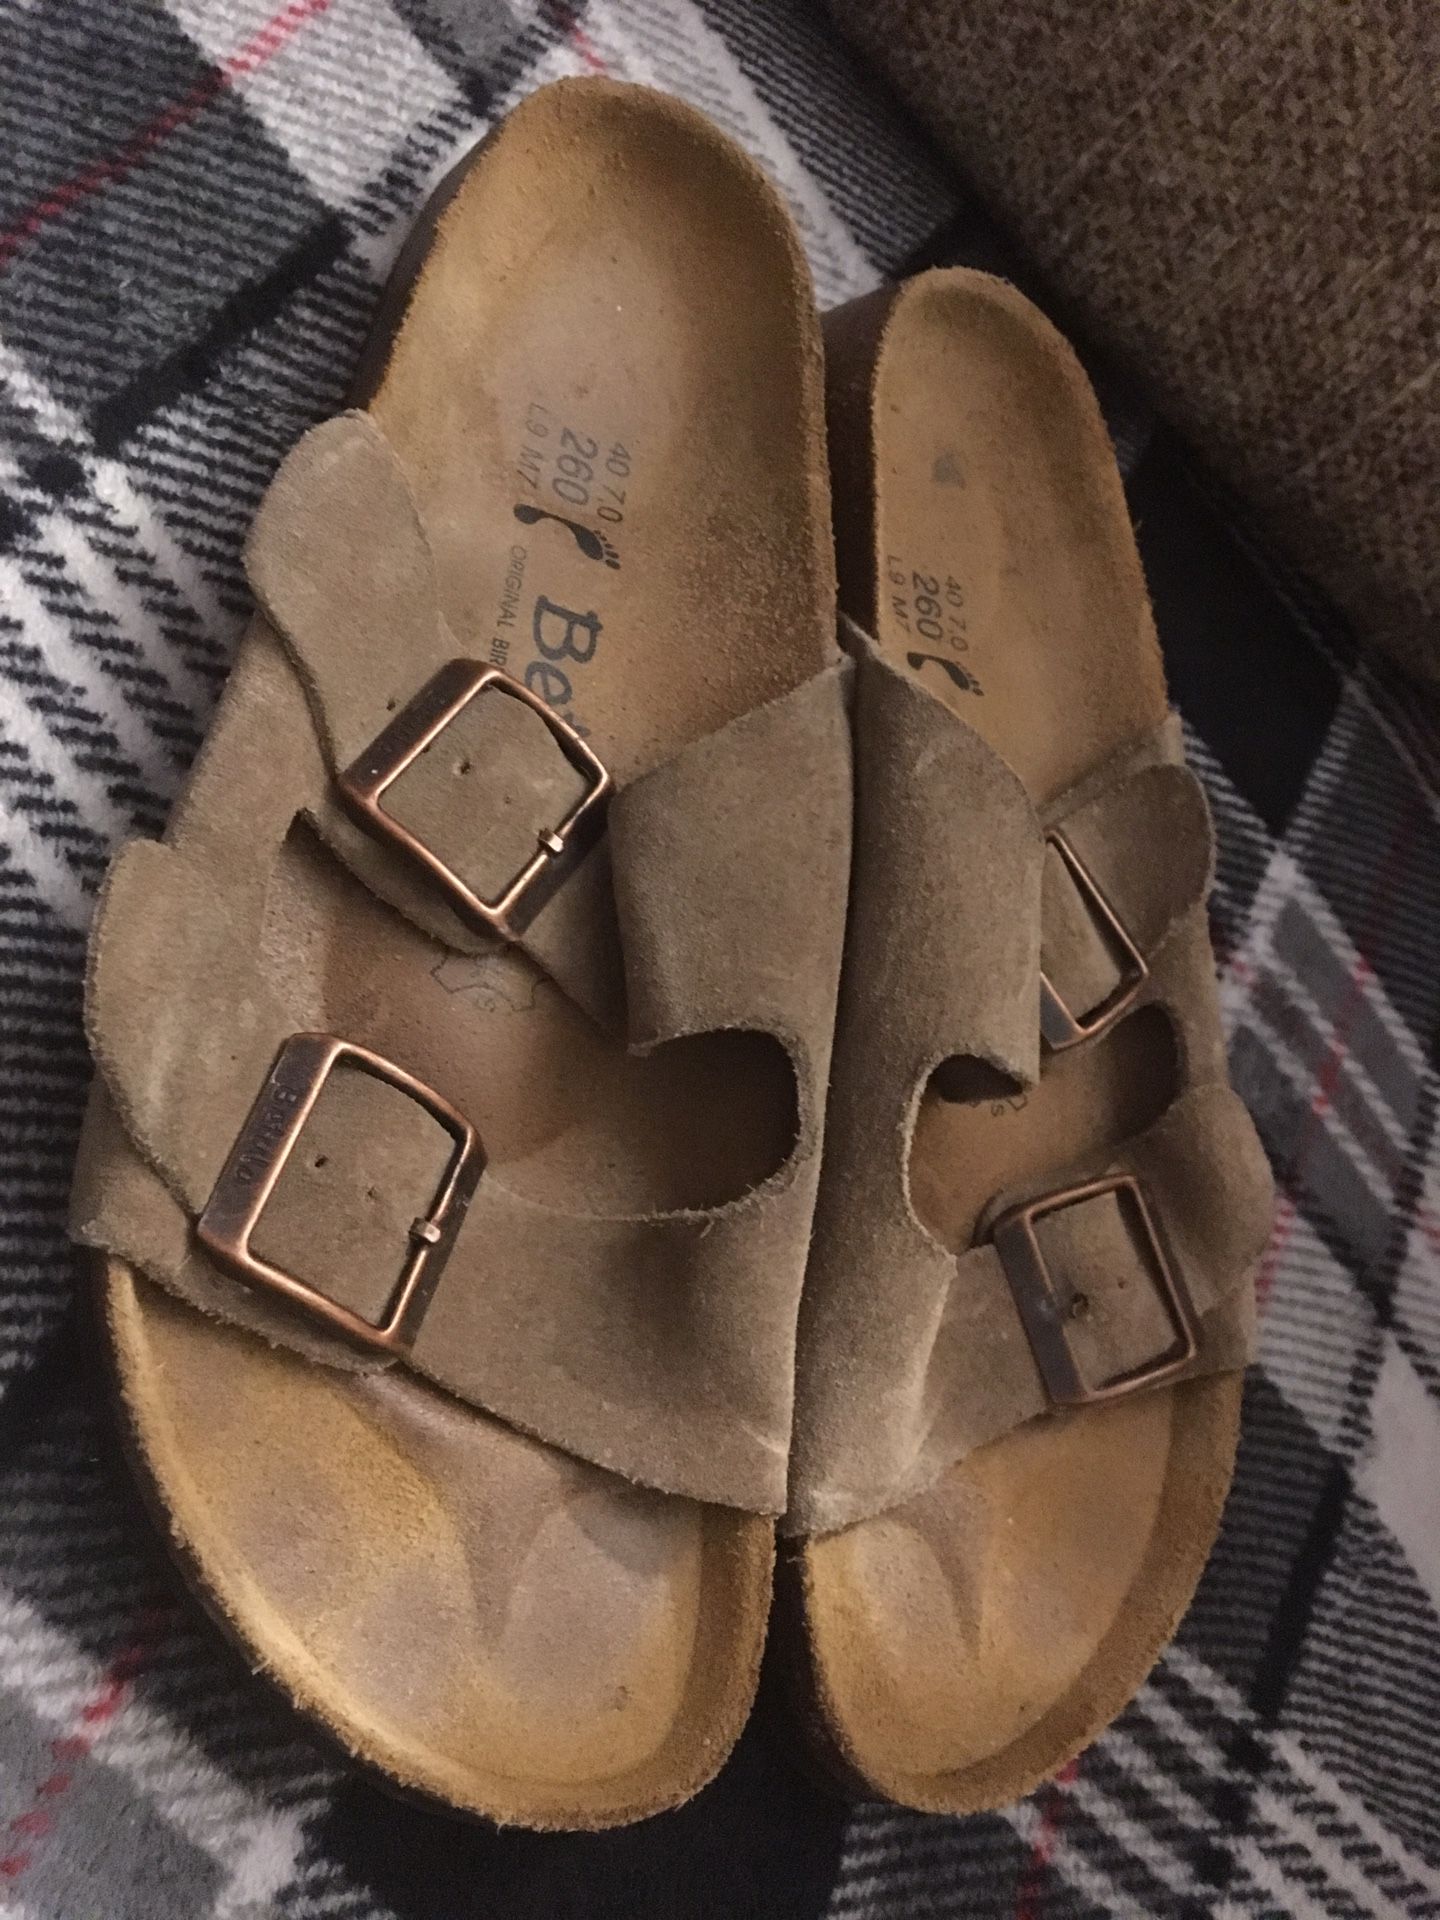 Birkenstock’s Betula Suede Buckle Sandals